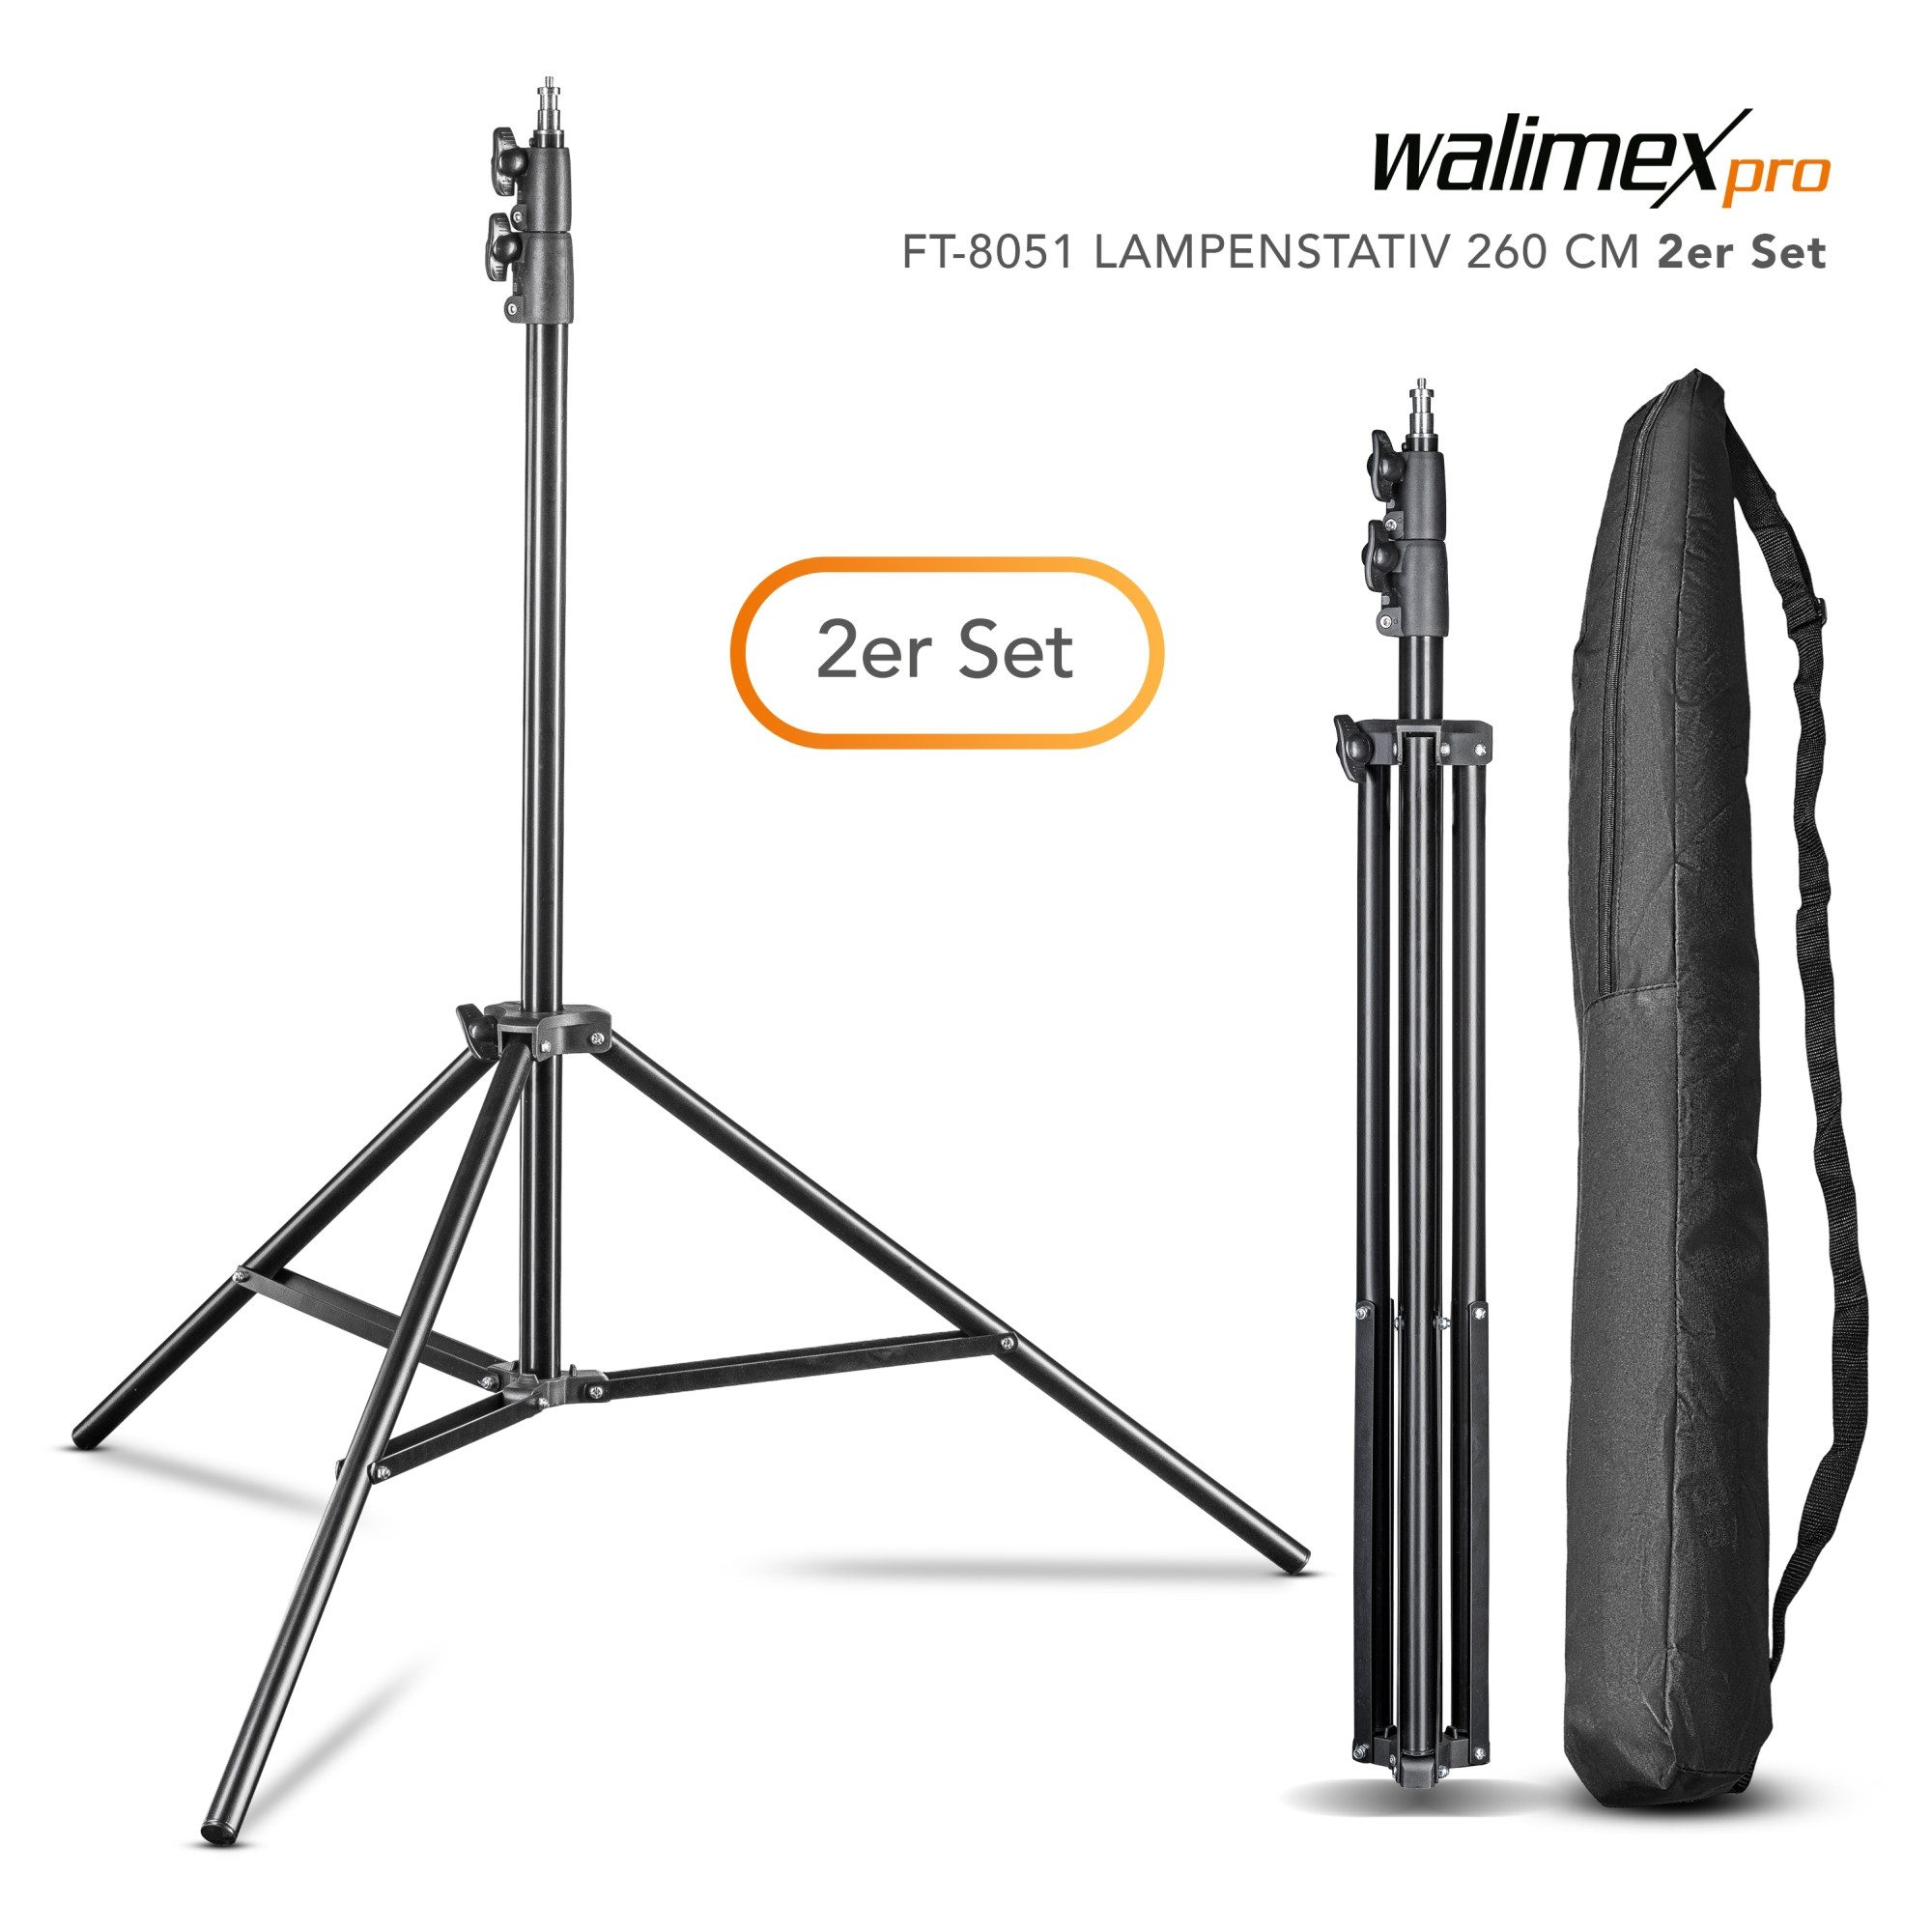 Walimex Pro FT-8051 Lampenstativ 260cm 2er Set Lampenstativ